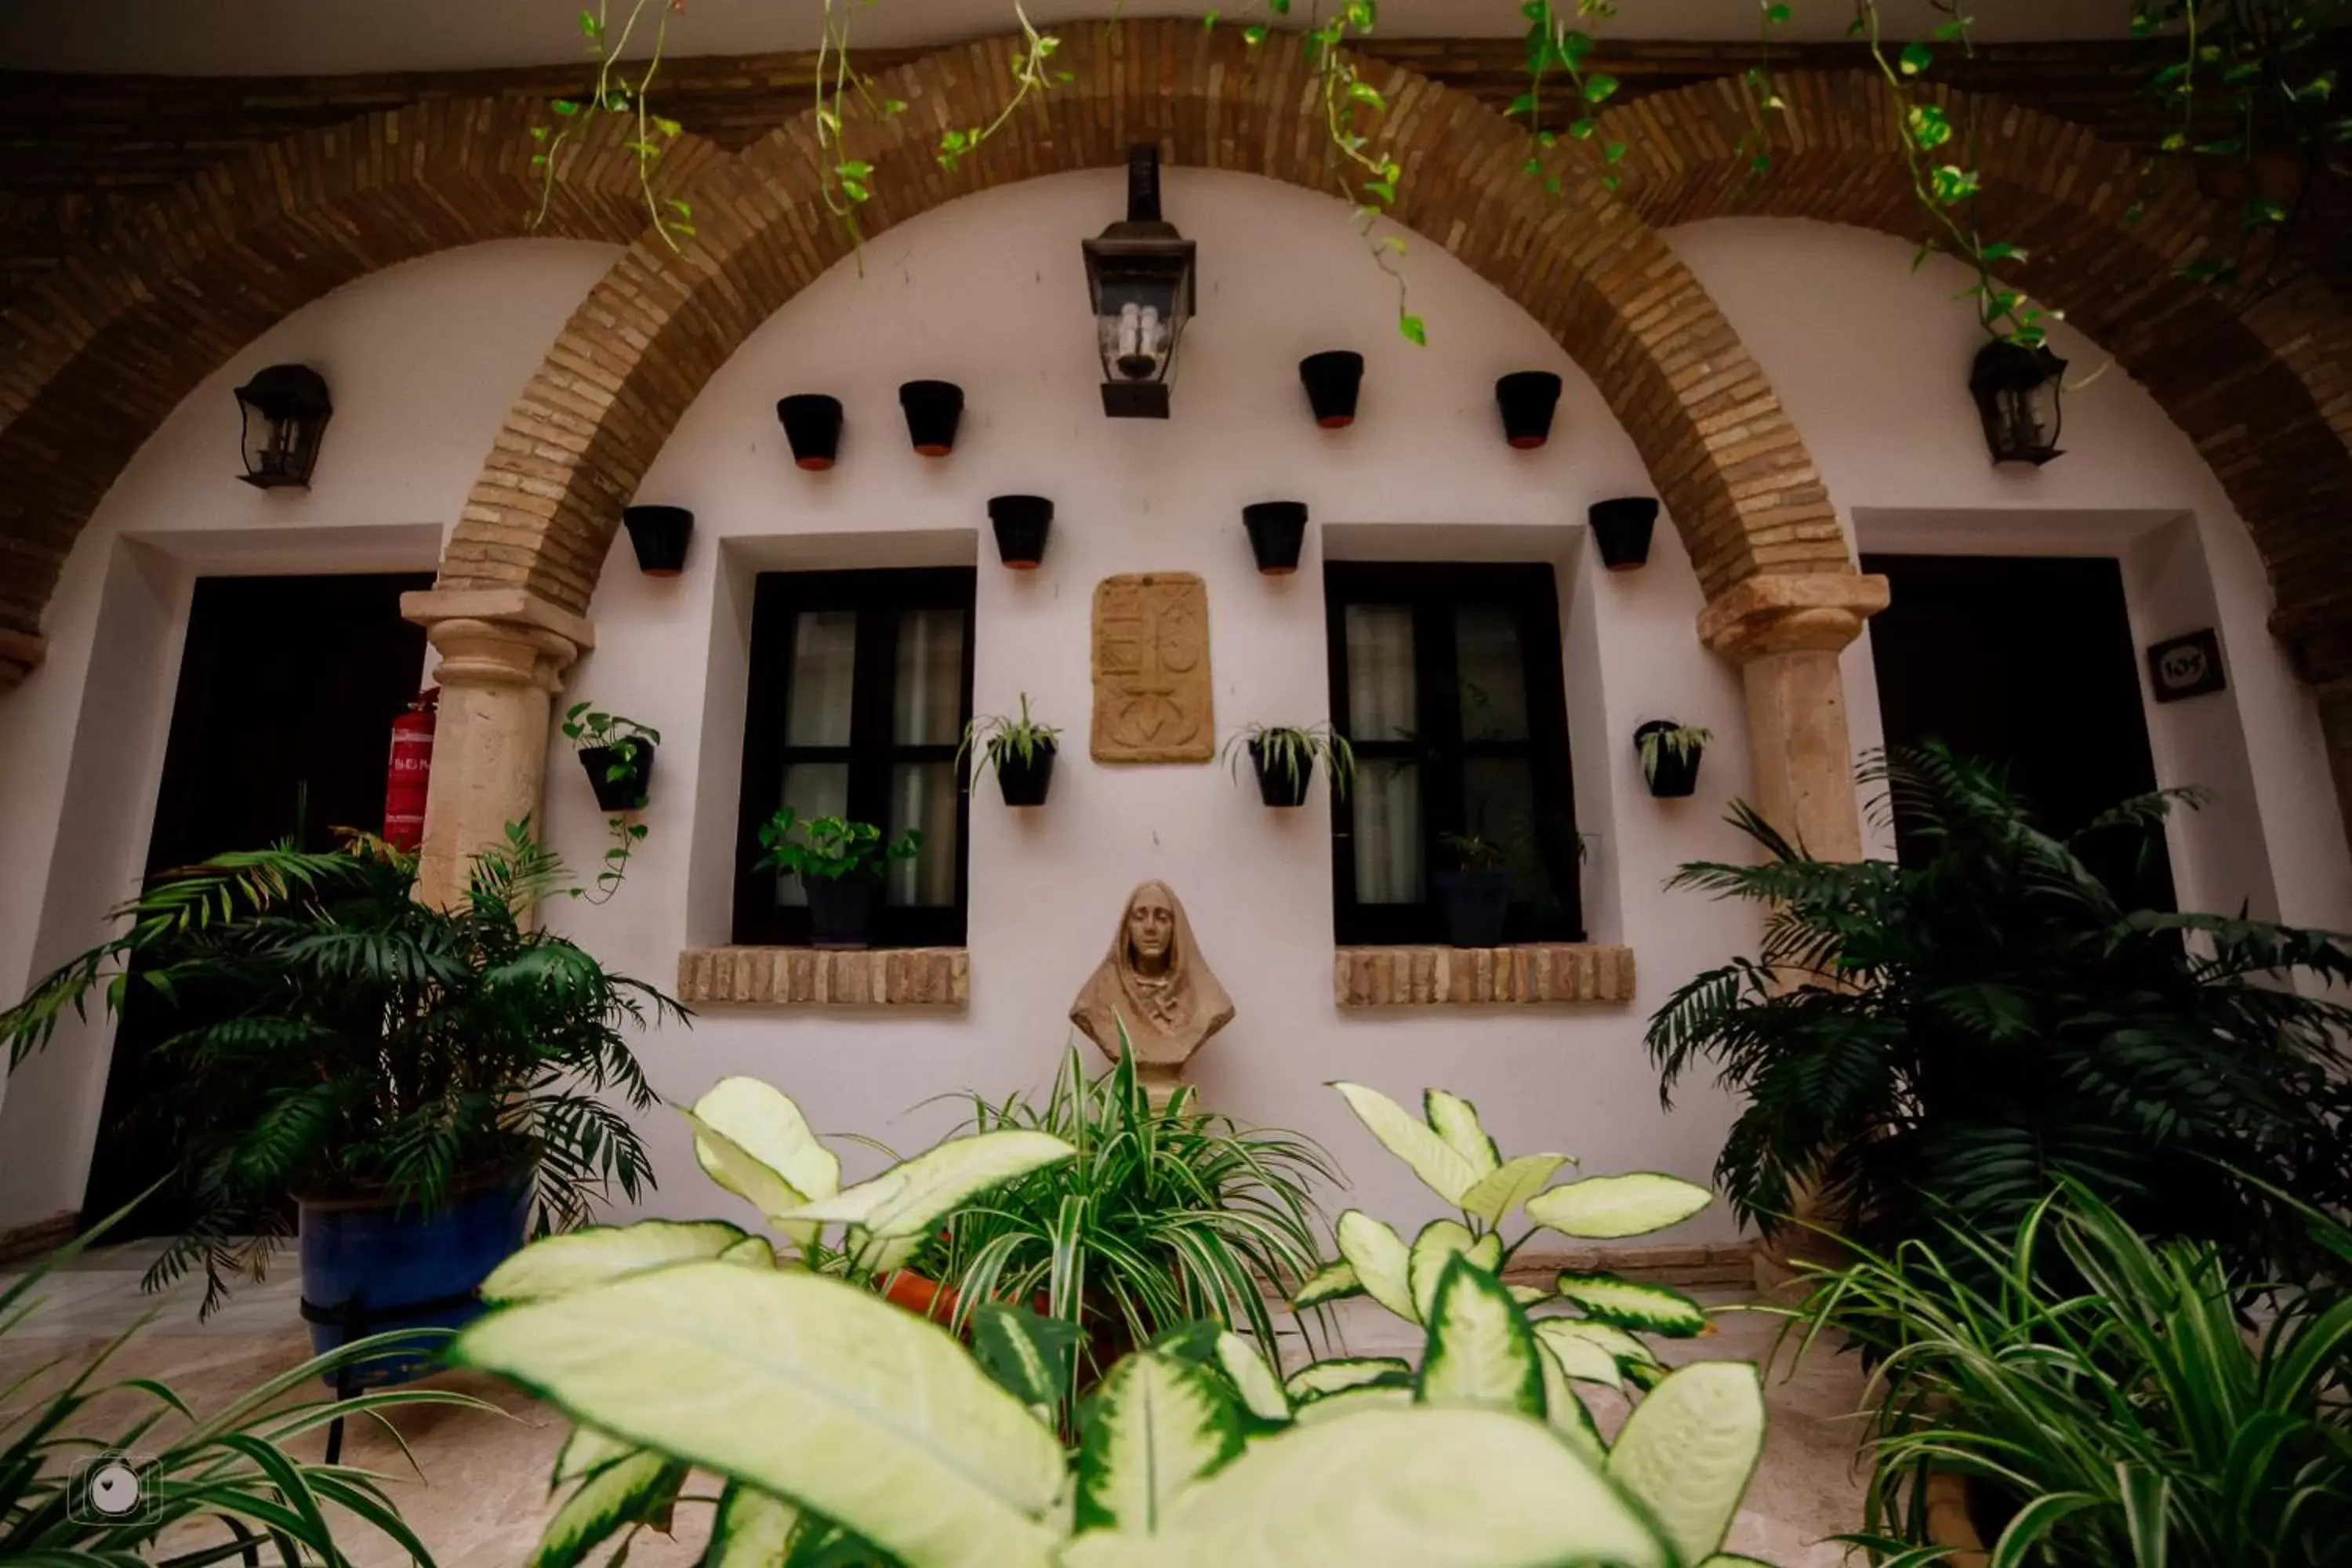 Facade/entrance in Hotel Posada de Vallina by MiRa